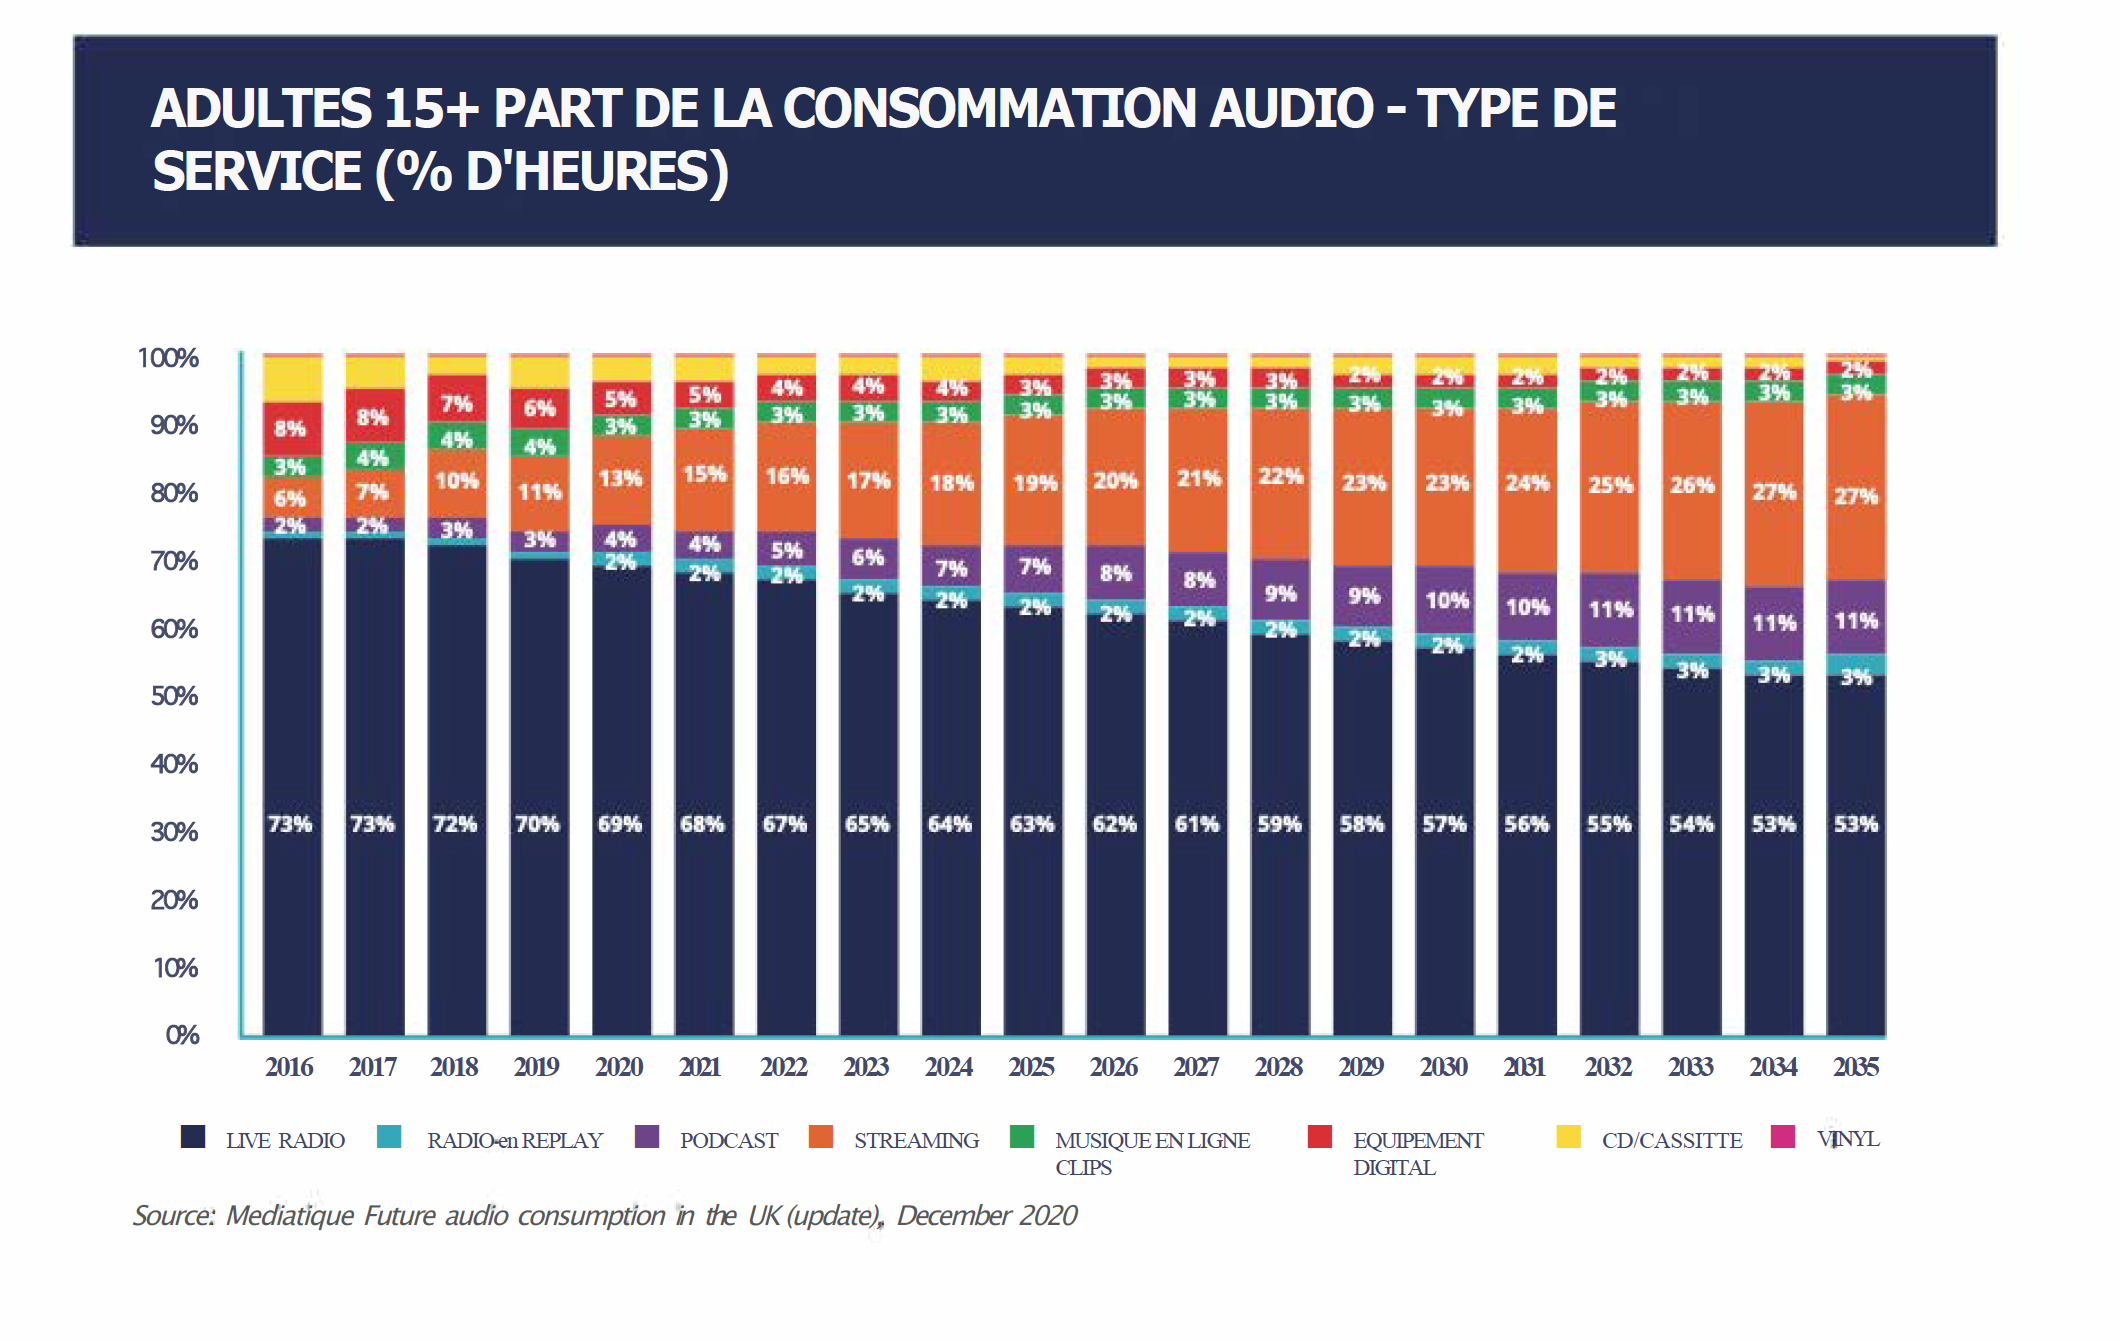 Source : Mediatique Future audio consumption in the UK (update), December 2020.